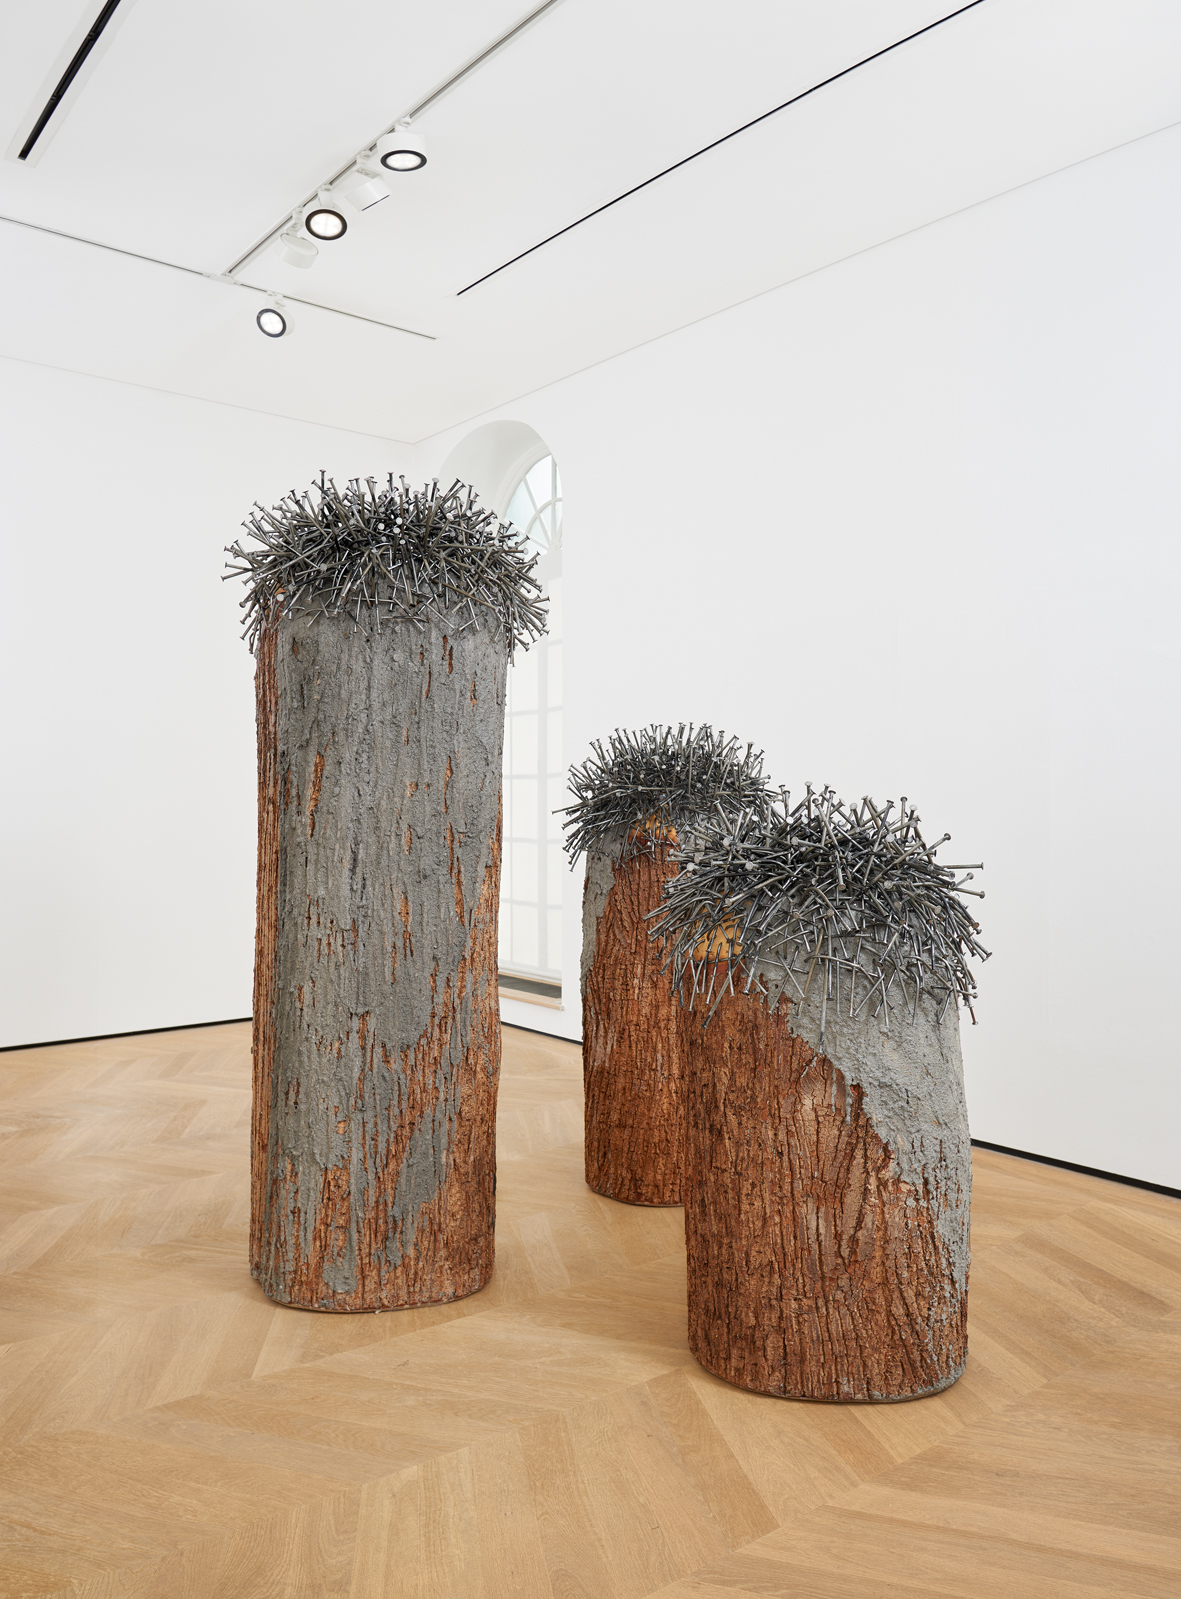 Install view of Günther Uecker's sculpture Bäume aus einem Stamm, 2009–15